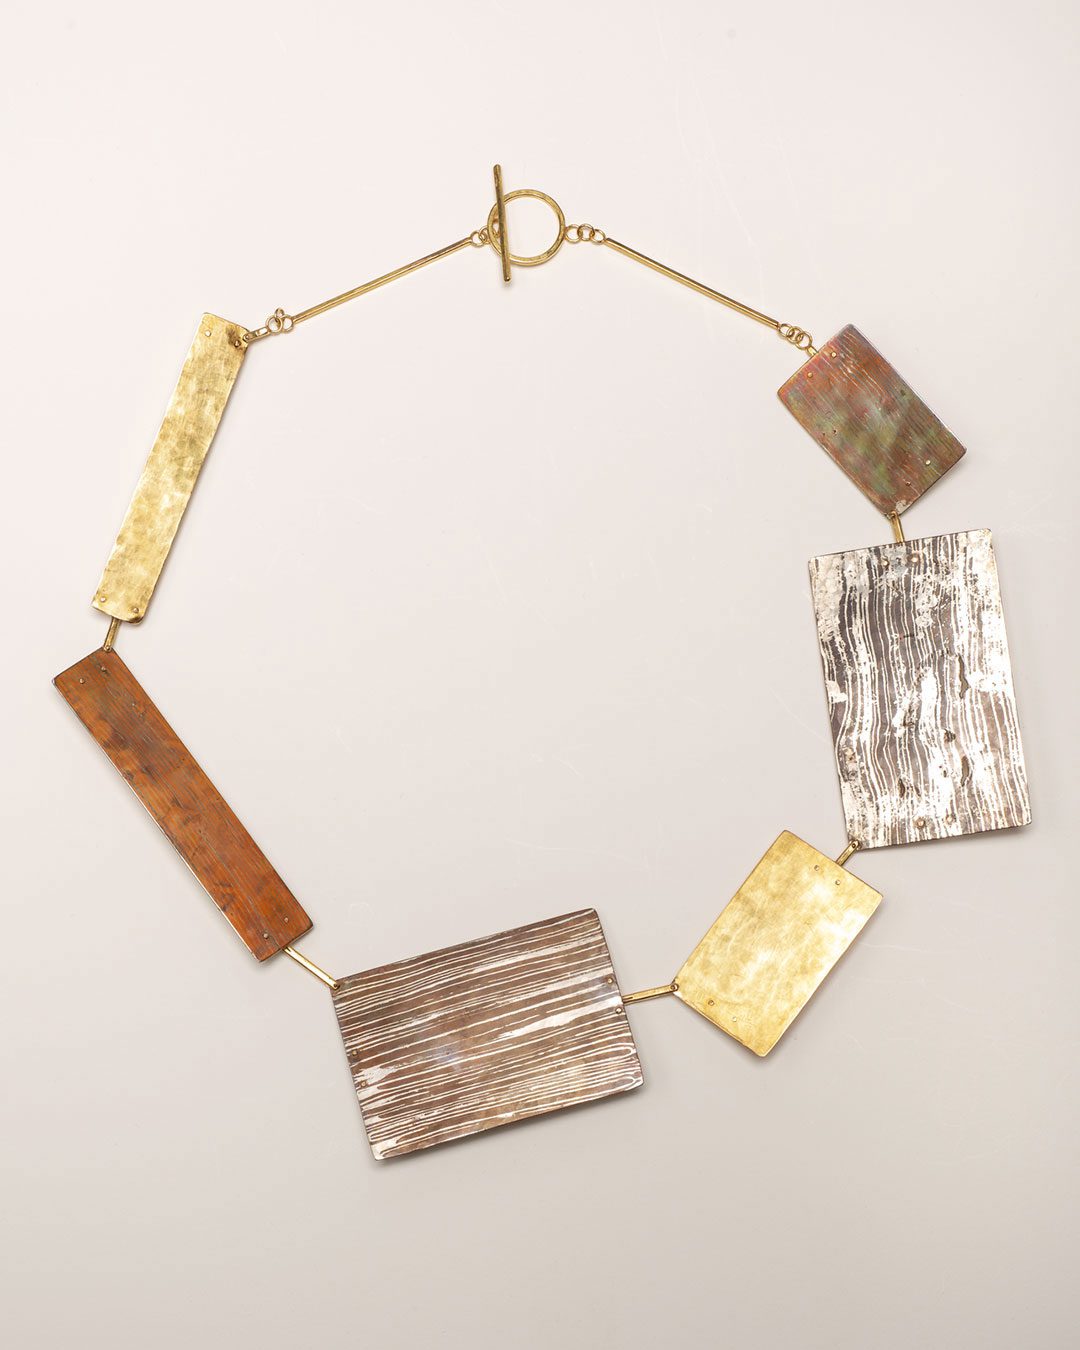 Stefano Marchetti, untitled, 2018, necklace, gold, silver, copper, 205 x 170 x 10 mm